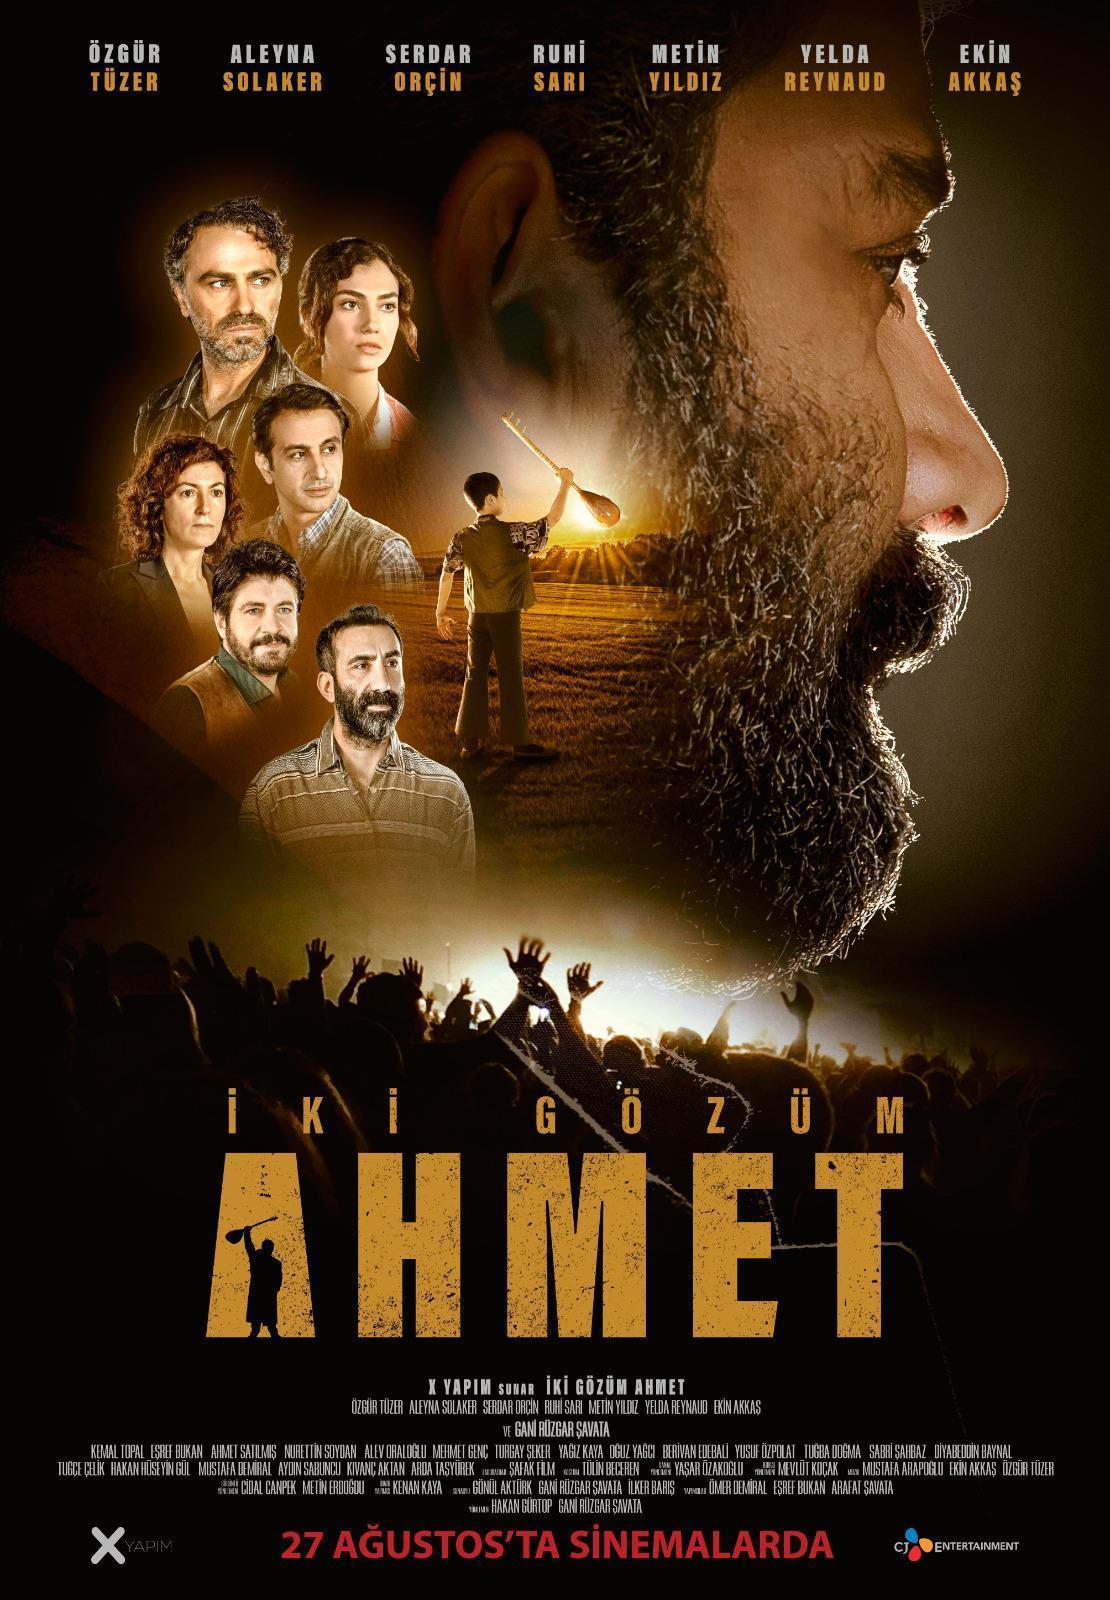 Ahmet Kaya filminin yönetmeni: Bilseydik vizyona girmezdik